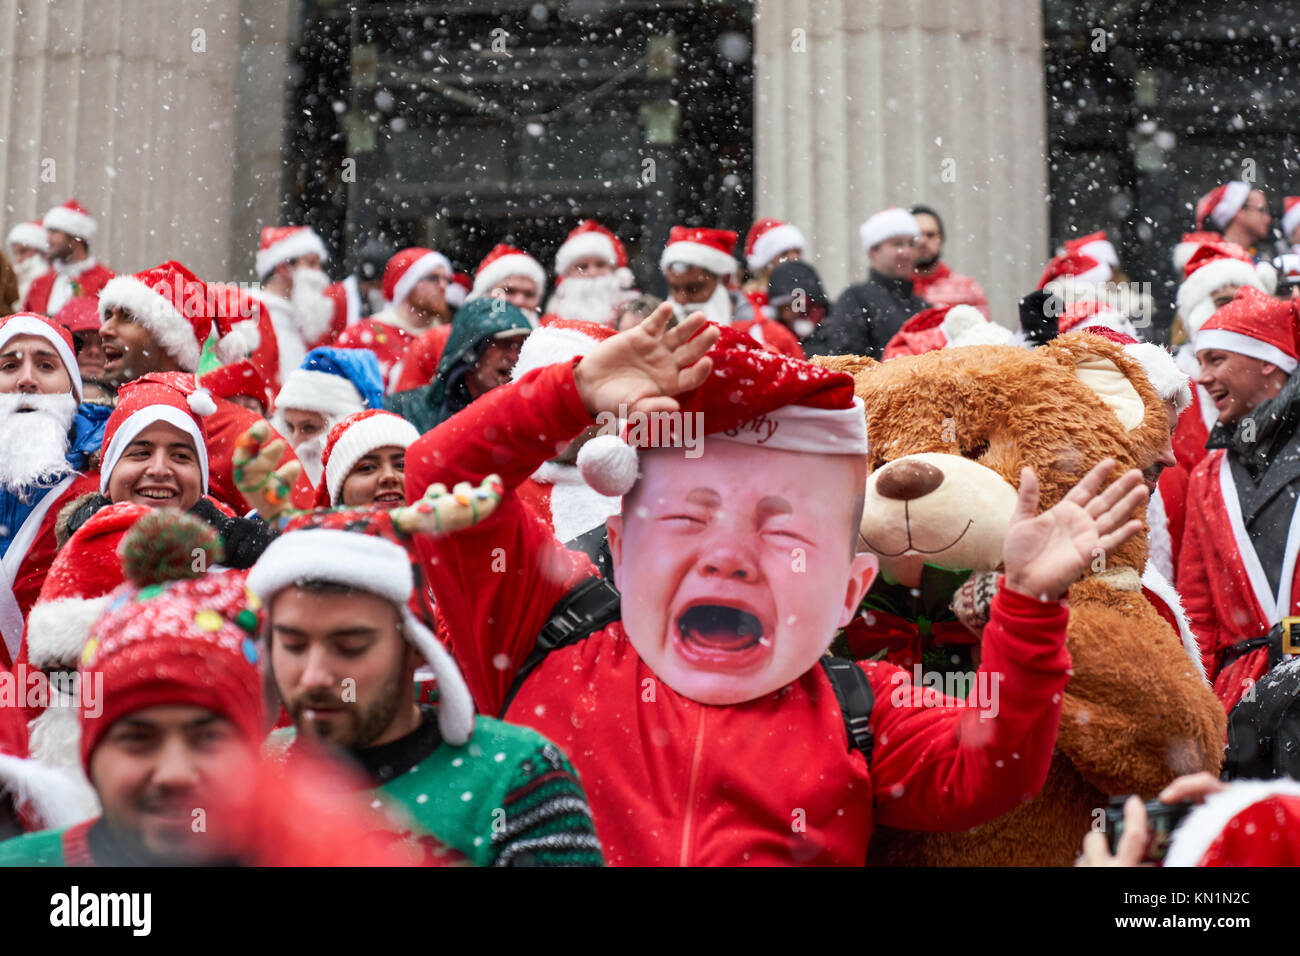 New York, États-Unis, 9 déc 2017. Des gens habillés en Père Noël posent pour une photo de groupe lors d'une "fête" antacon rassembler sous une tempête de foule. Photo par Enrique Shore/Alamy Live News Banque D'Images